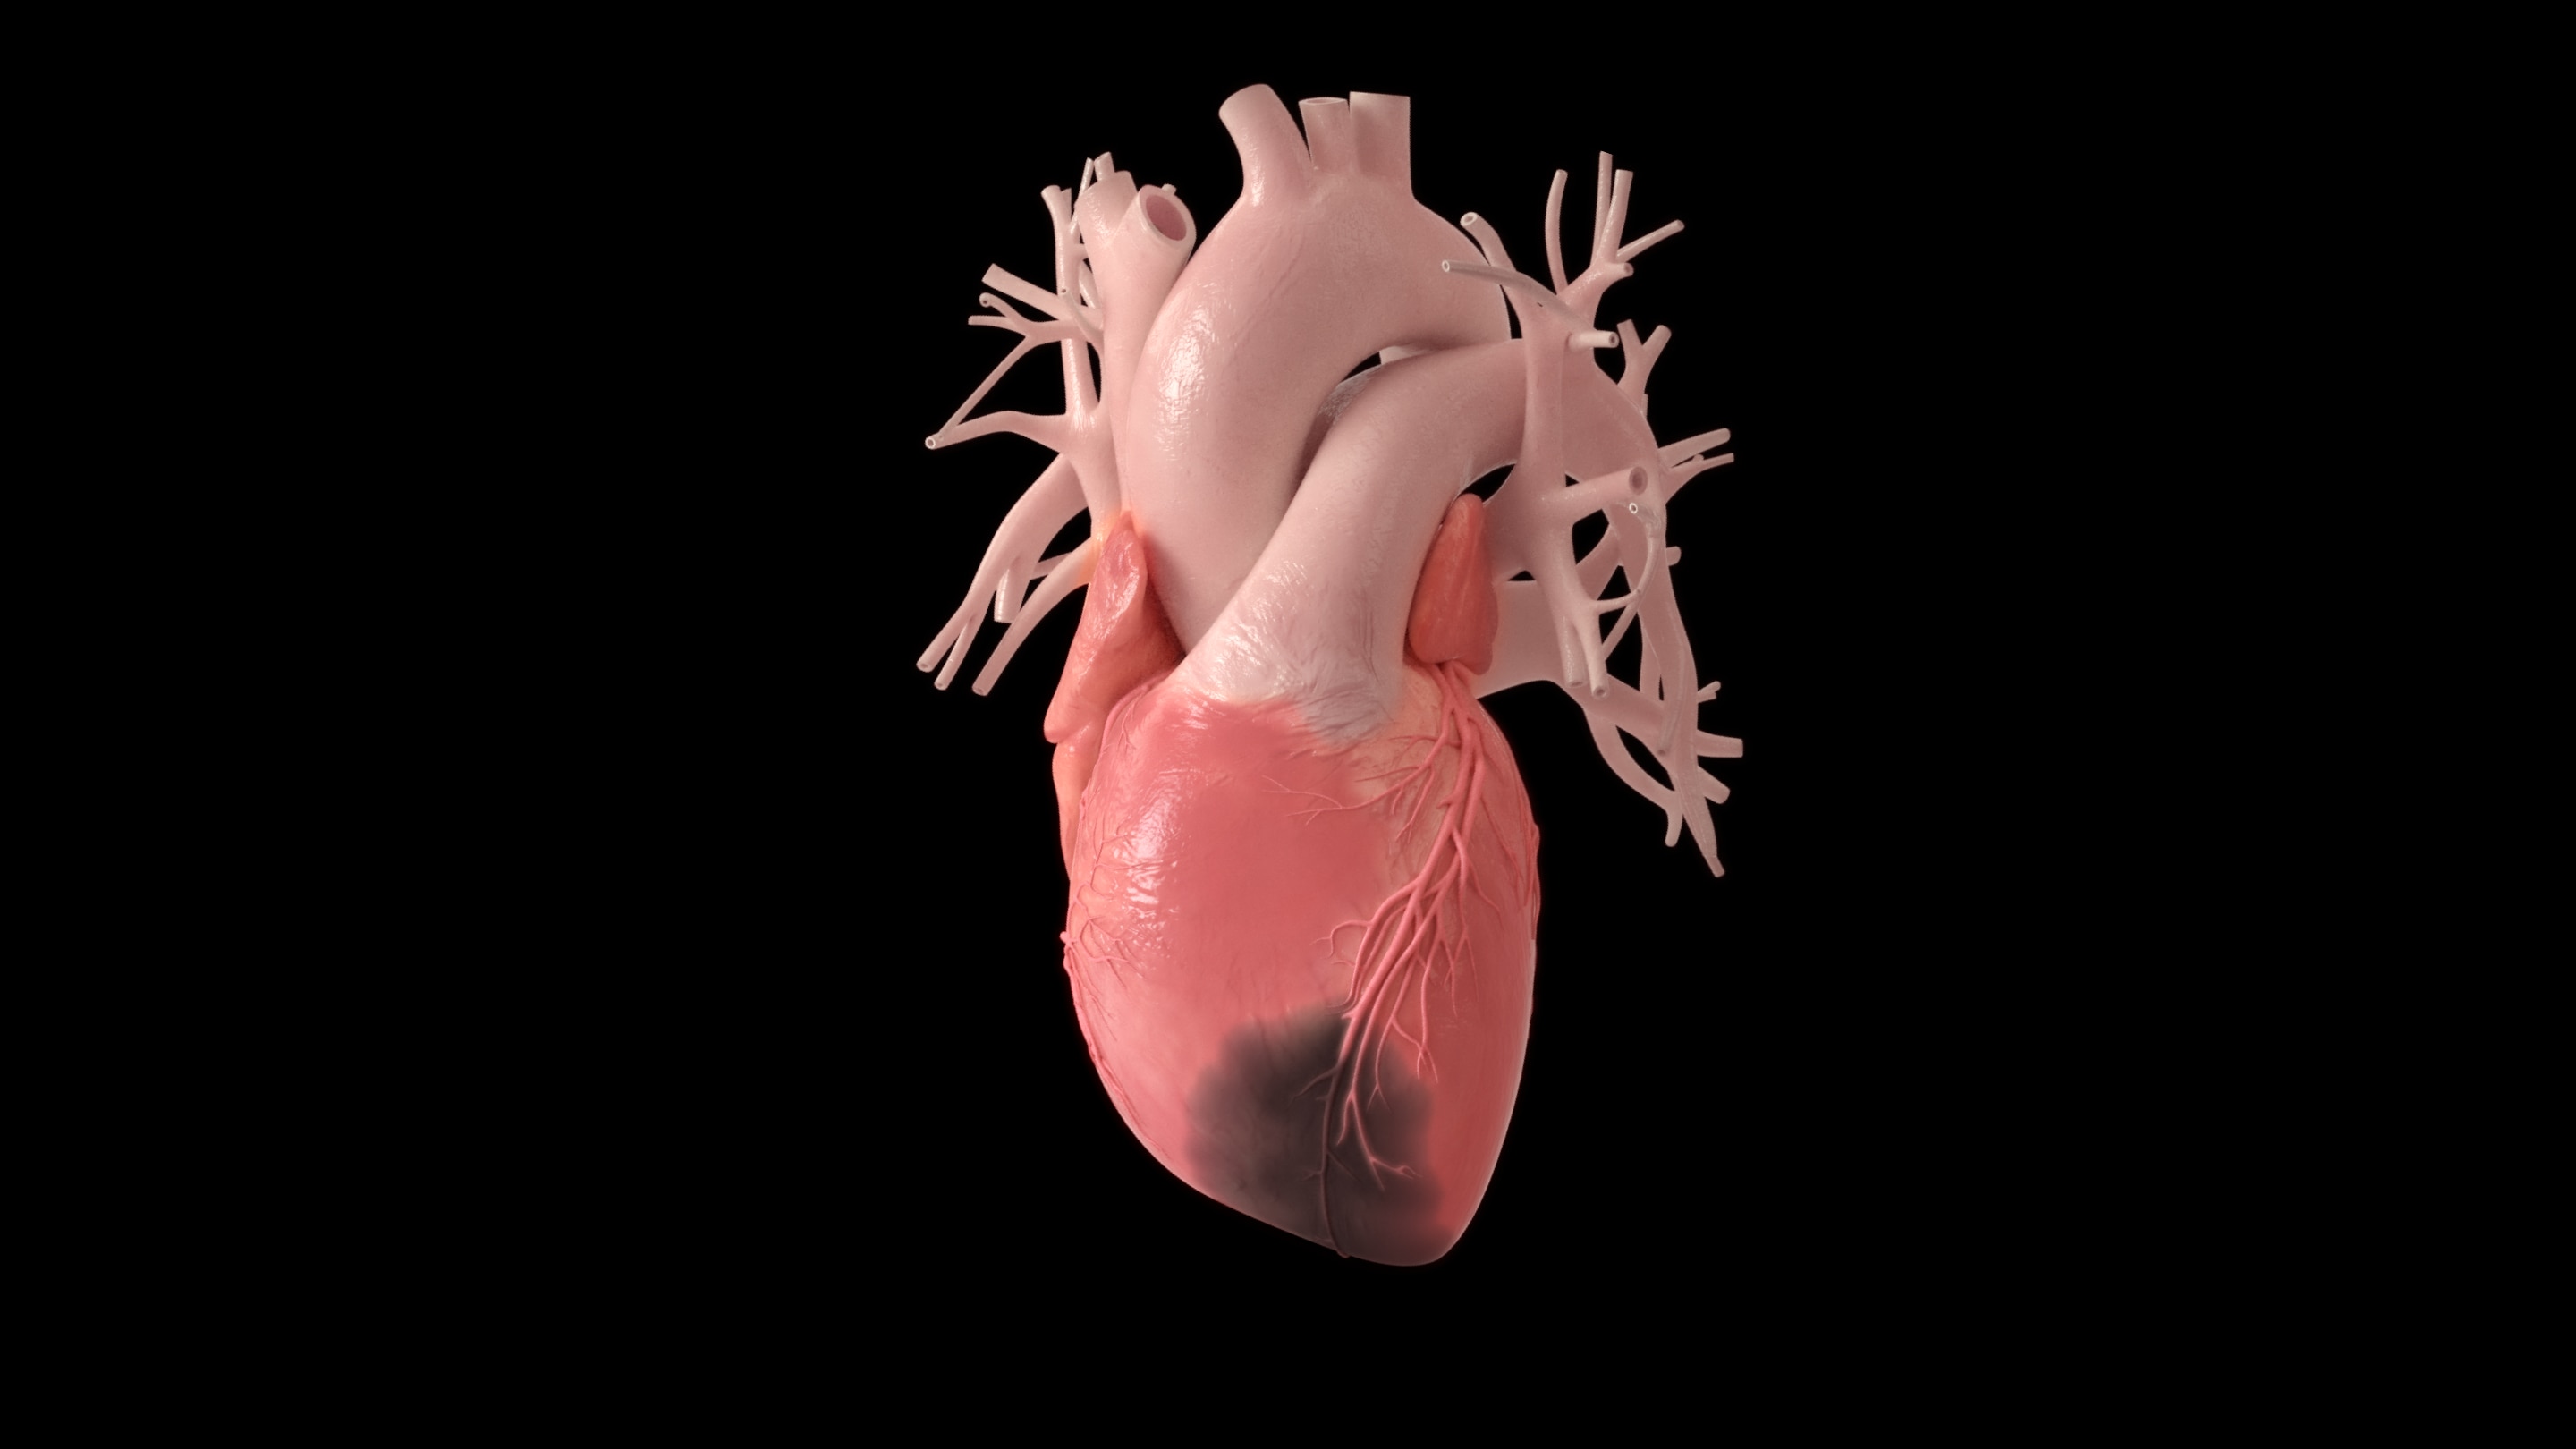 心筋梗塞をおこした心臓は、元通りになることはほぼない。それは心臓が半世紀をかけてもわずか3割ほどしか細胞の新陳代謝をおこさないという性質をもっているからだ。他の多くの臓器はもっと短い周期で細胞が分裂し、新しい細胞に入れ替わる。